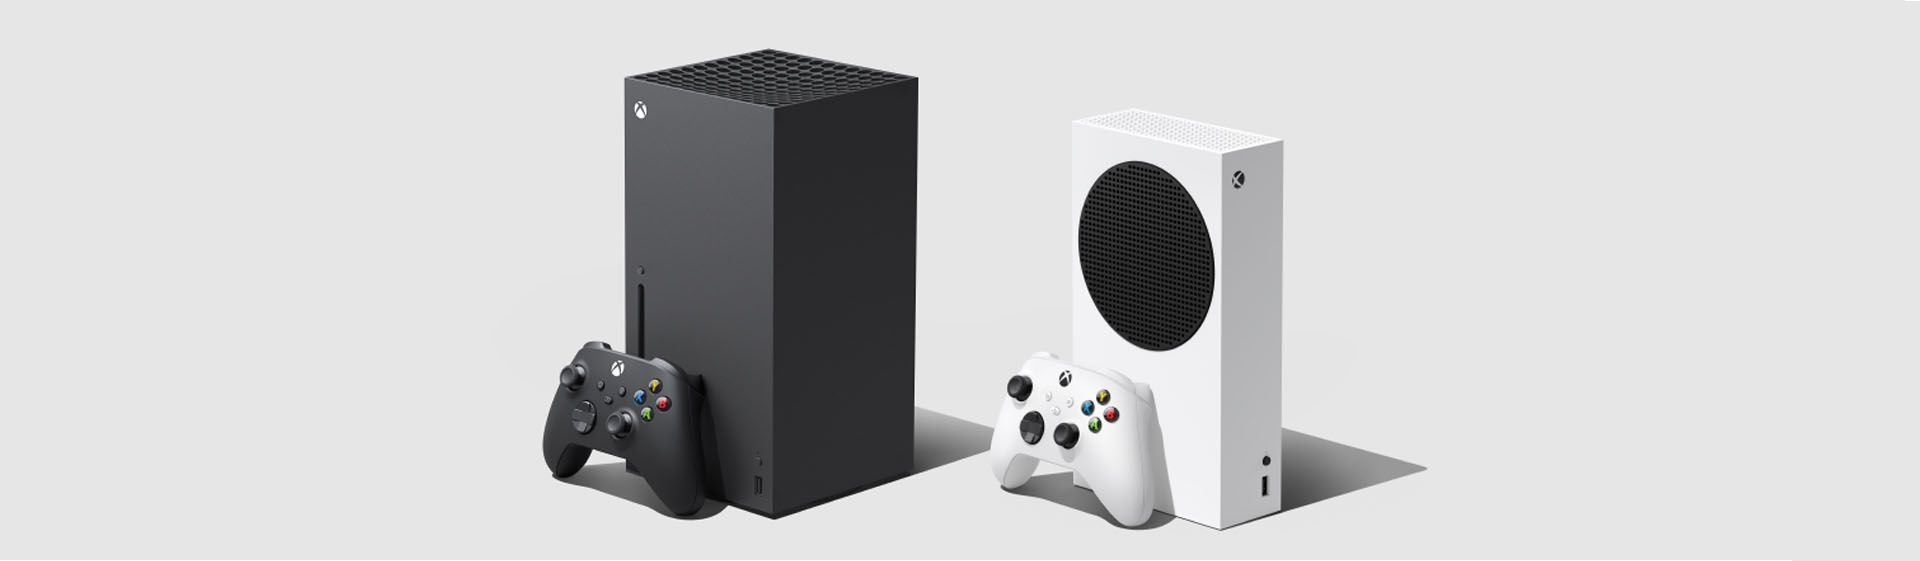 Xbox Series X vs Series S: diferenças entre os consoles da Microsoft